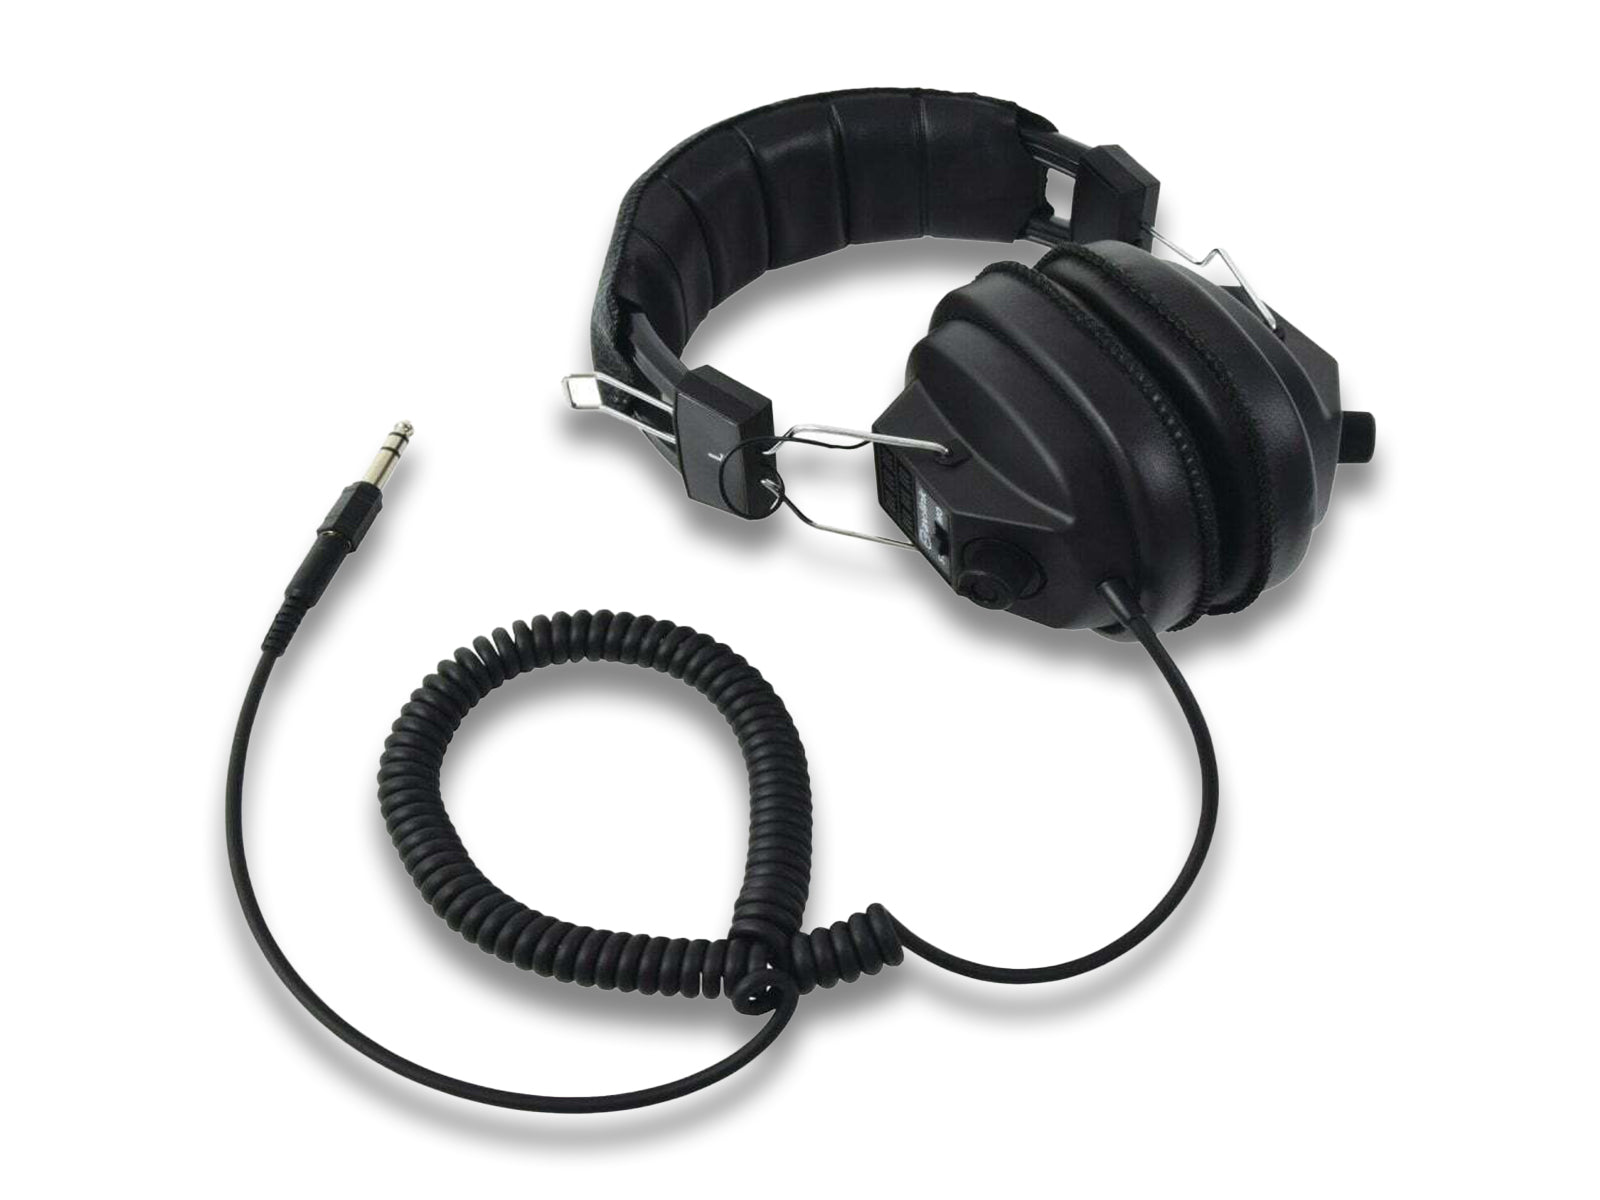 AV:Link Headphones With Wires Overhead View